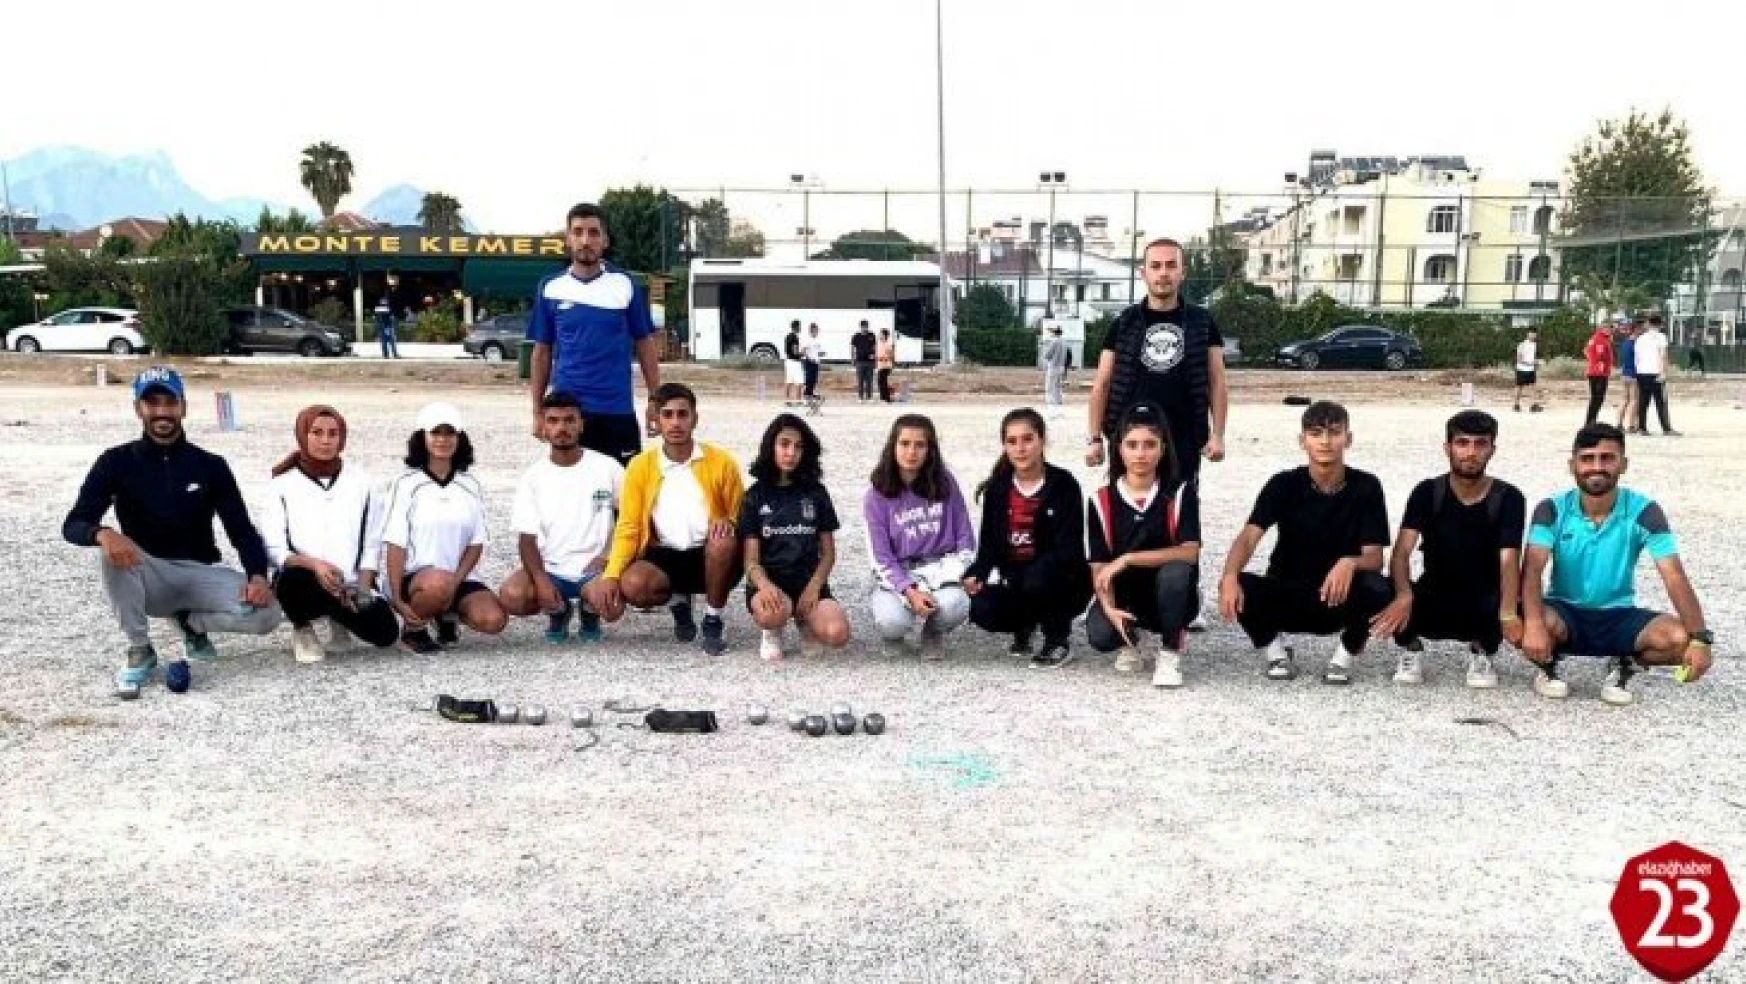 Elazığ'dan 4 sporcu Bocce Milli Takım seçmelerine katılacak